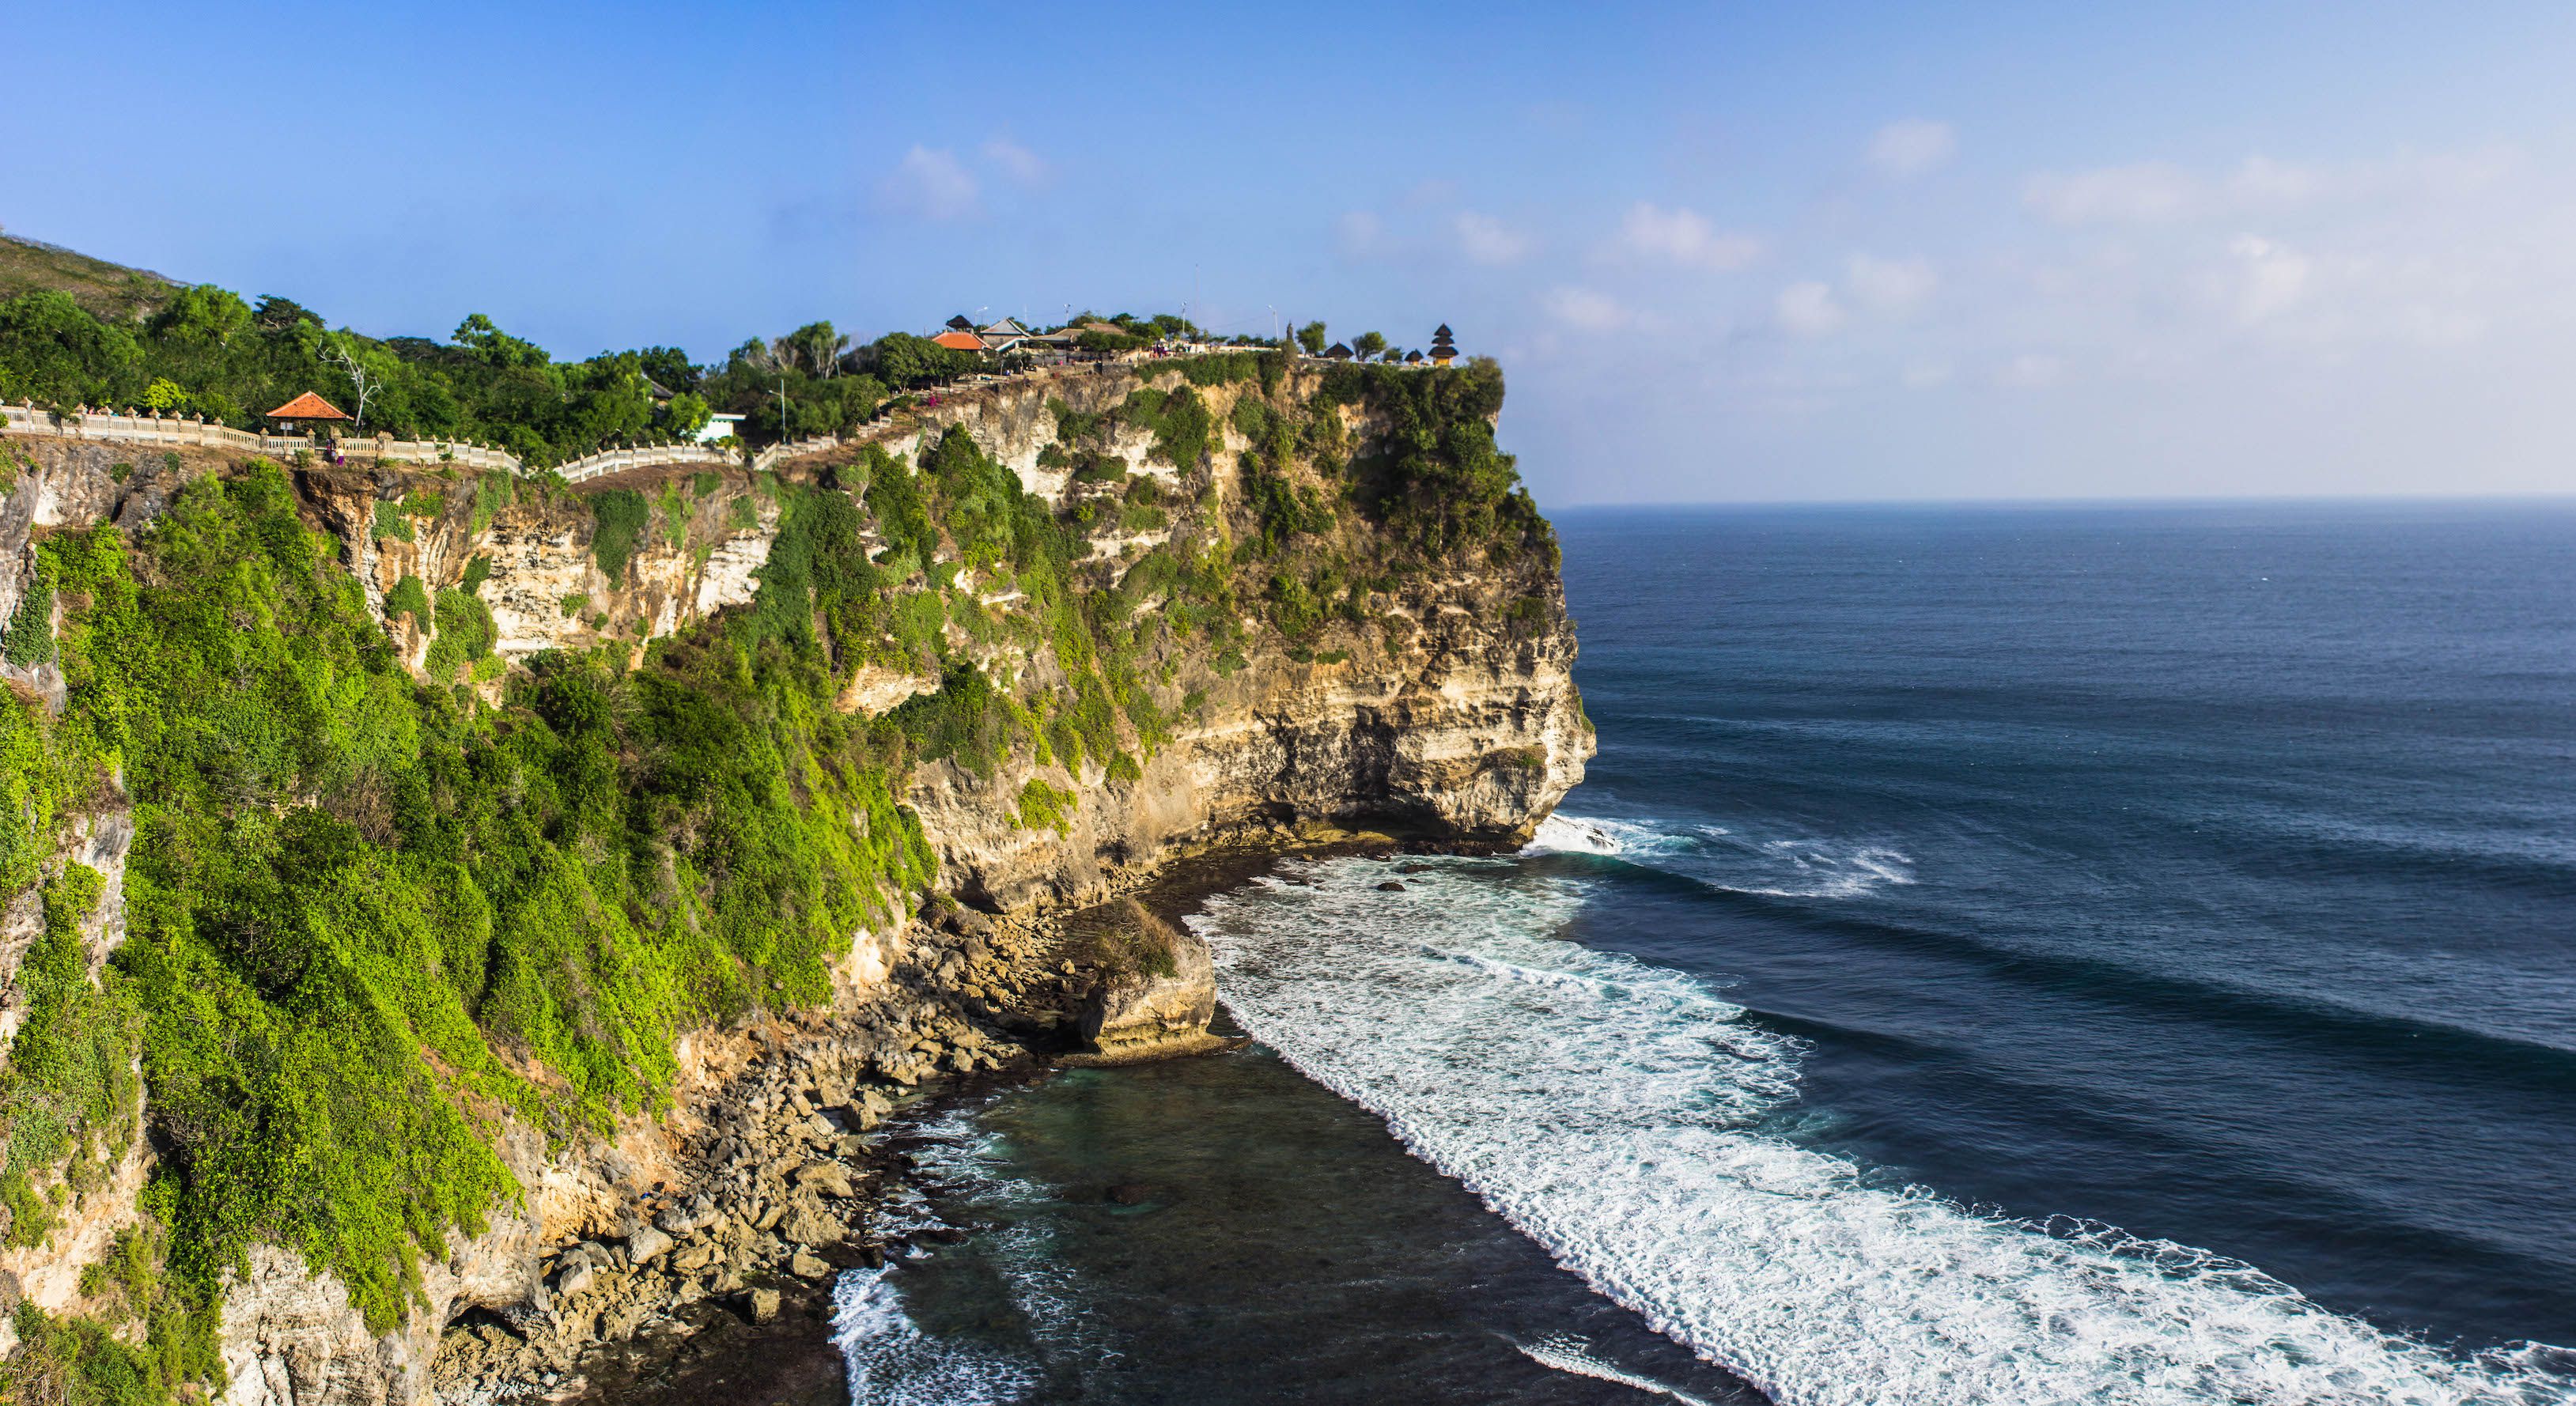 Cliffs of Uluwatu, Bali, Indonesia